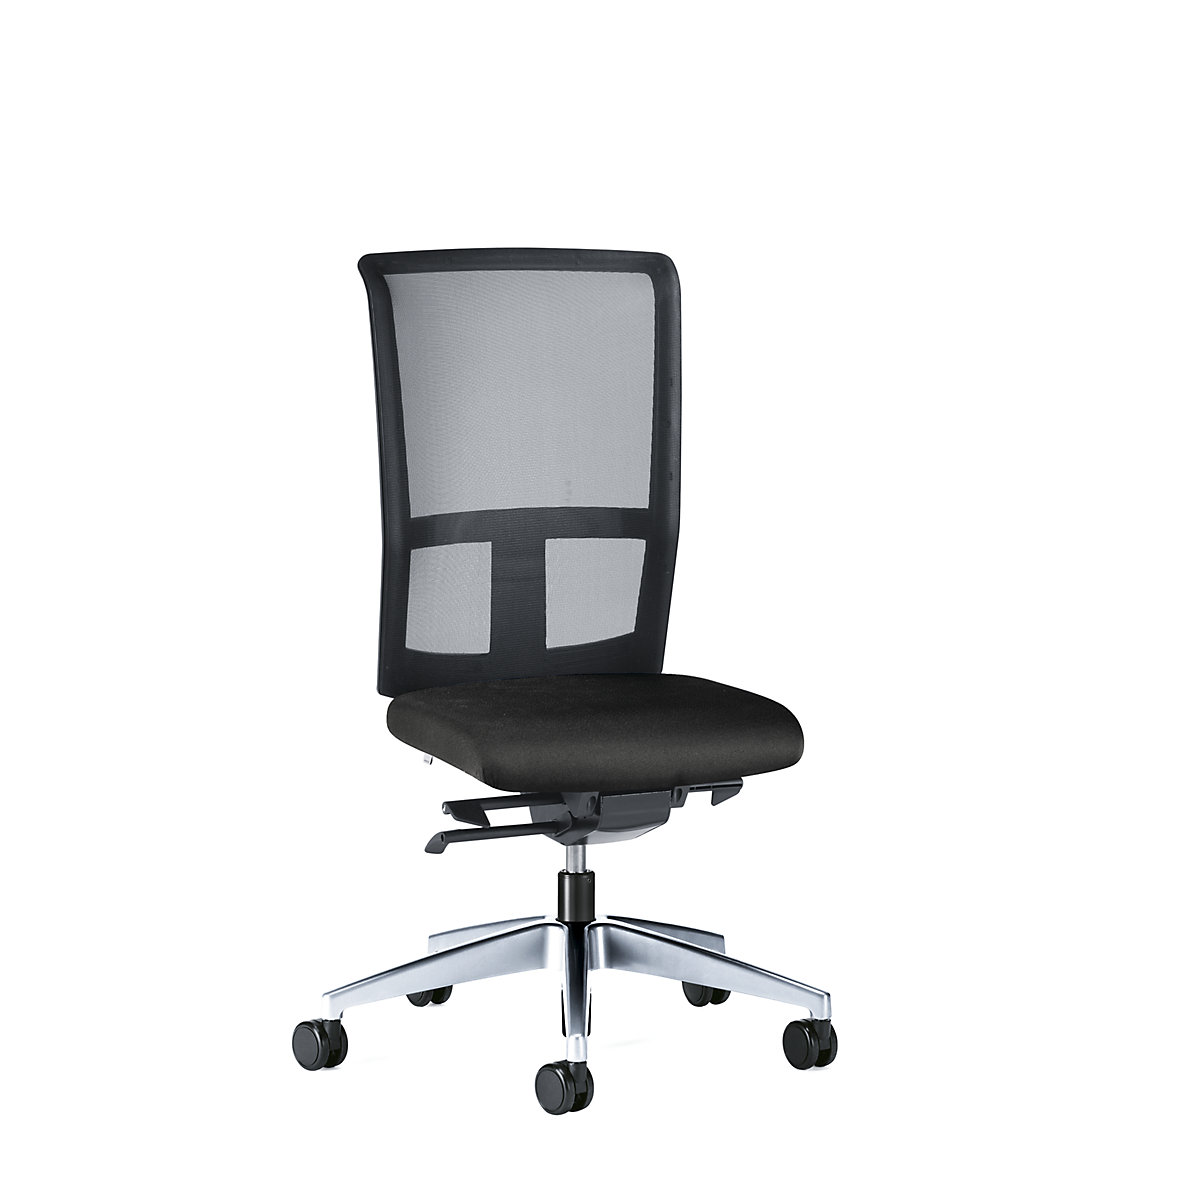 GOAL AIR office swivel chair, back rest height 545 mm - interstuhl